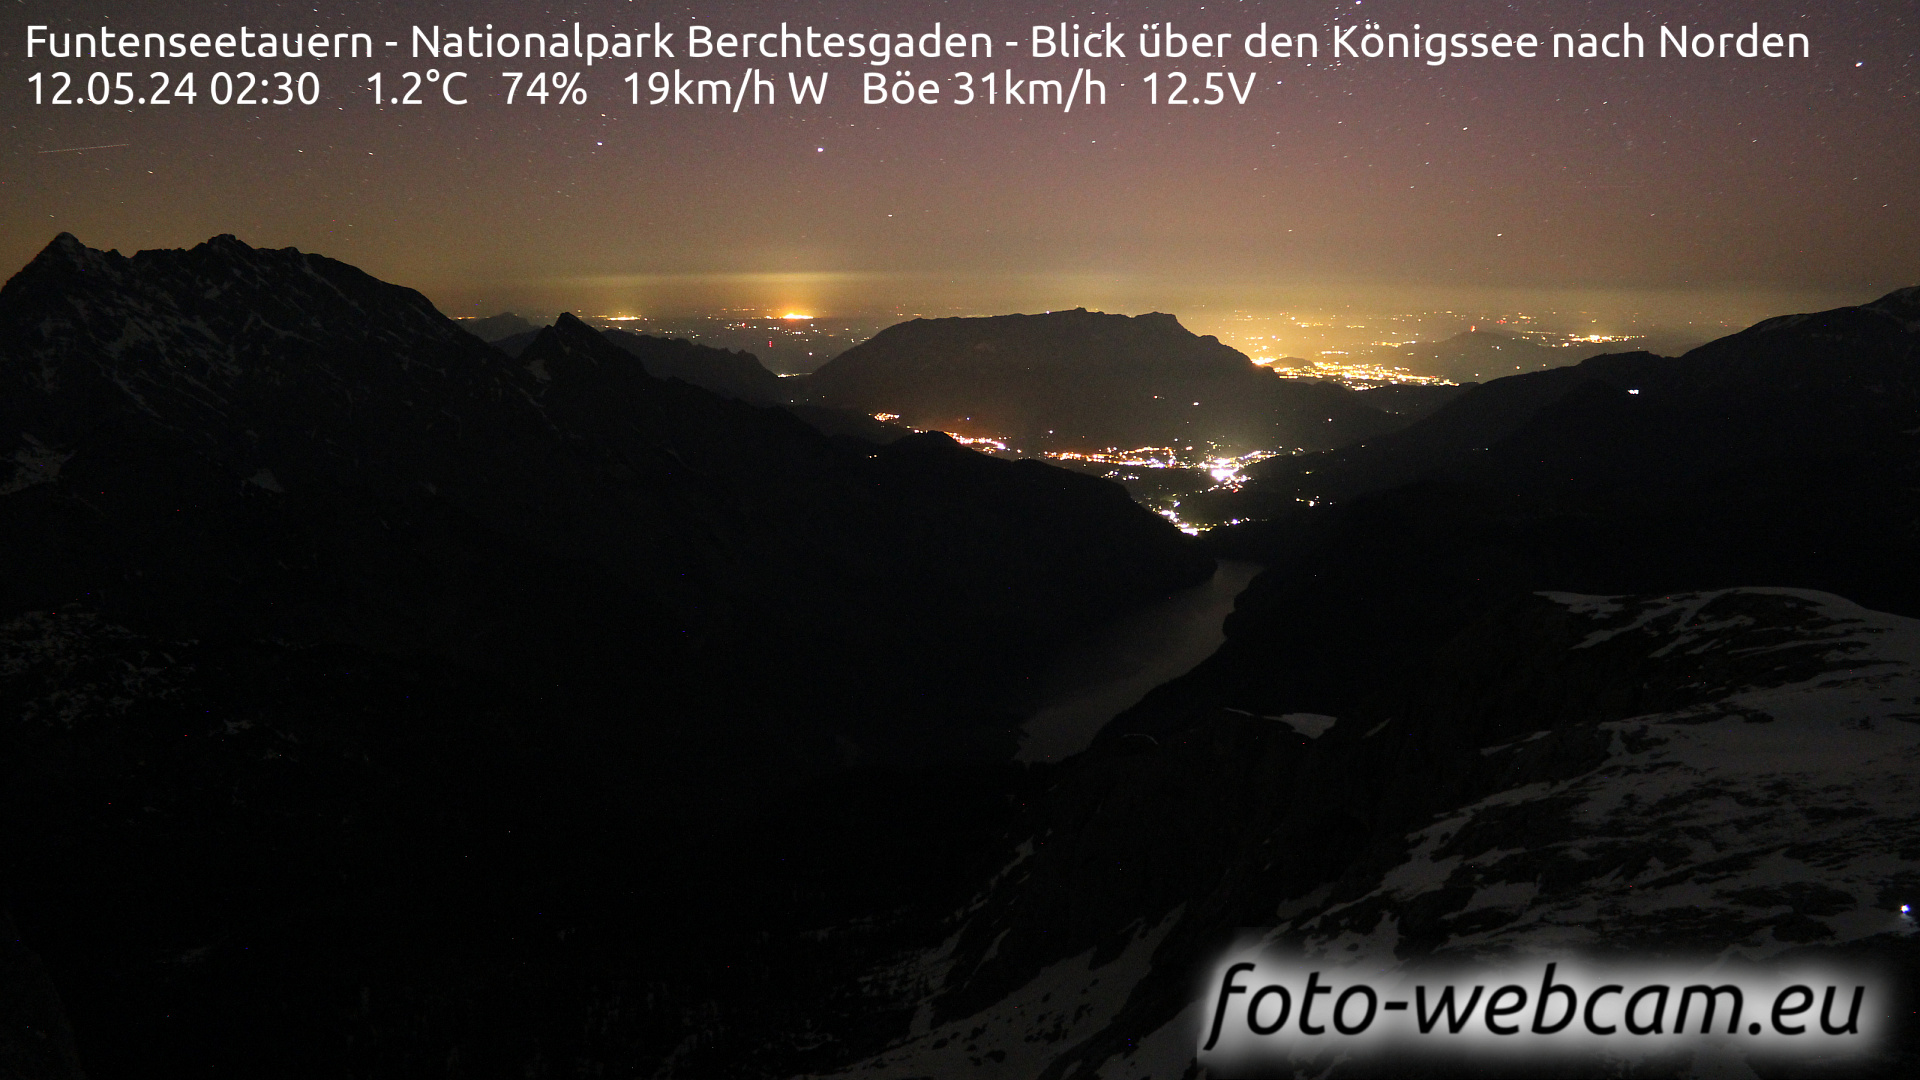 Berchtesgaden Je. 02:48